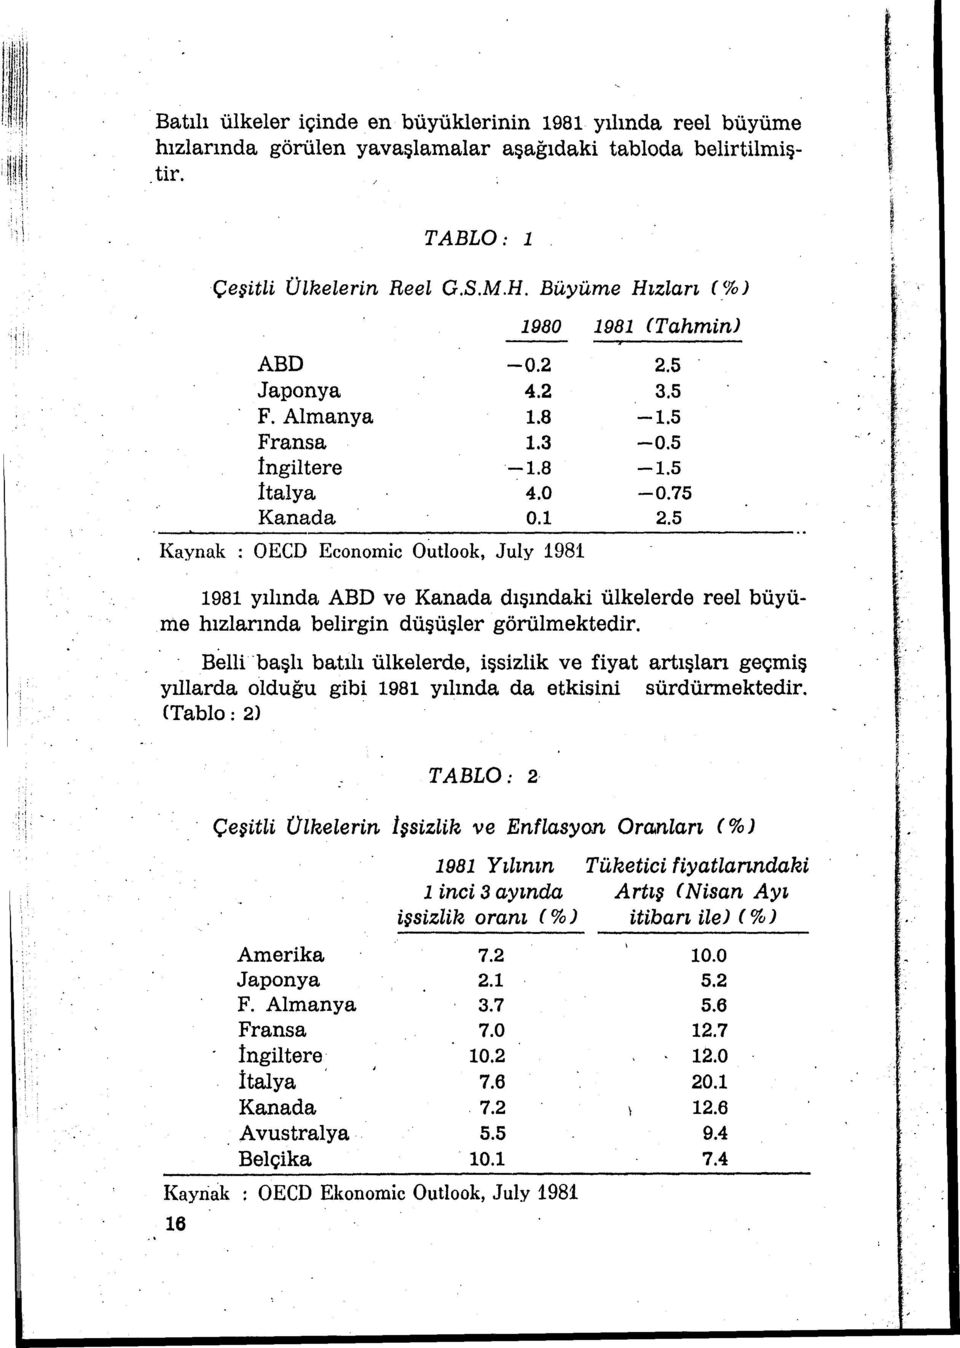 5 Kaynak : OECD Economic Outlook, July 1981 1981 yılında ABD ve Kanada dışındaki ülkelerde reel büyüme hızlarında belirgin düşüşler görülmektedir.